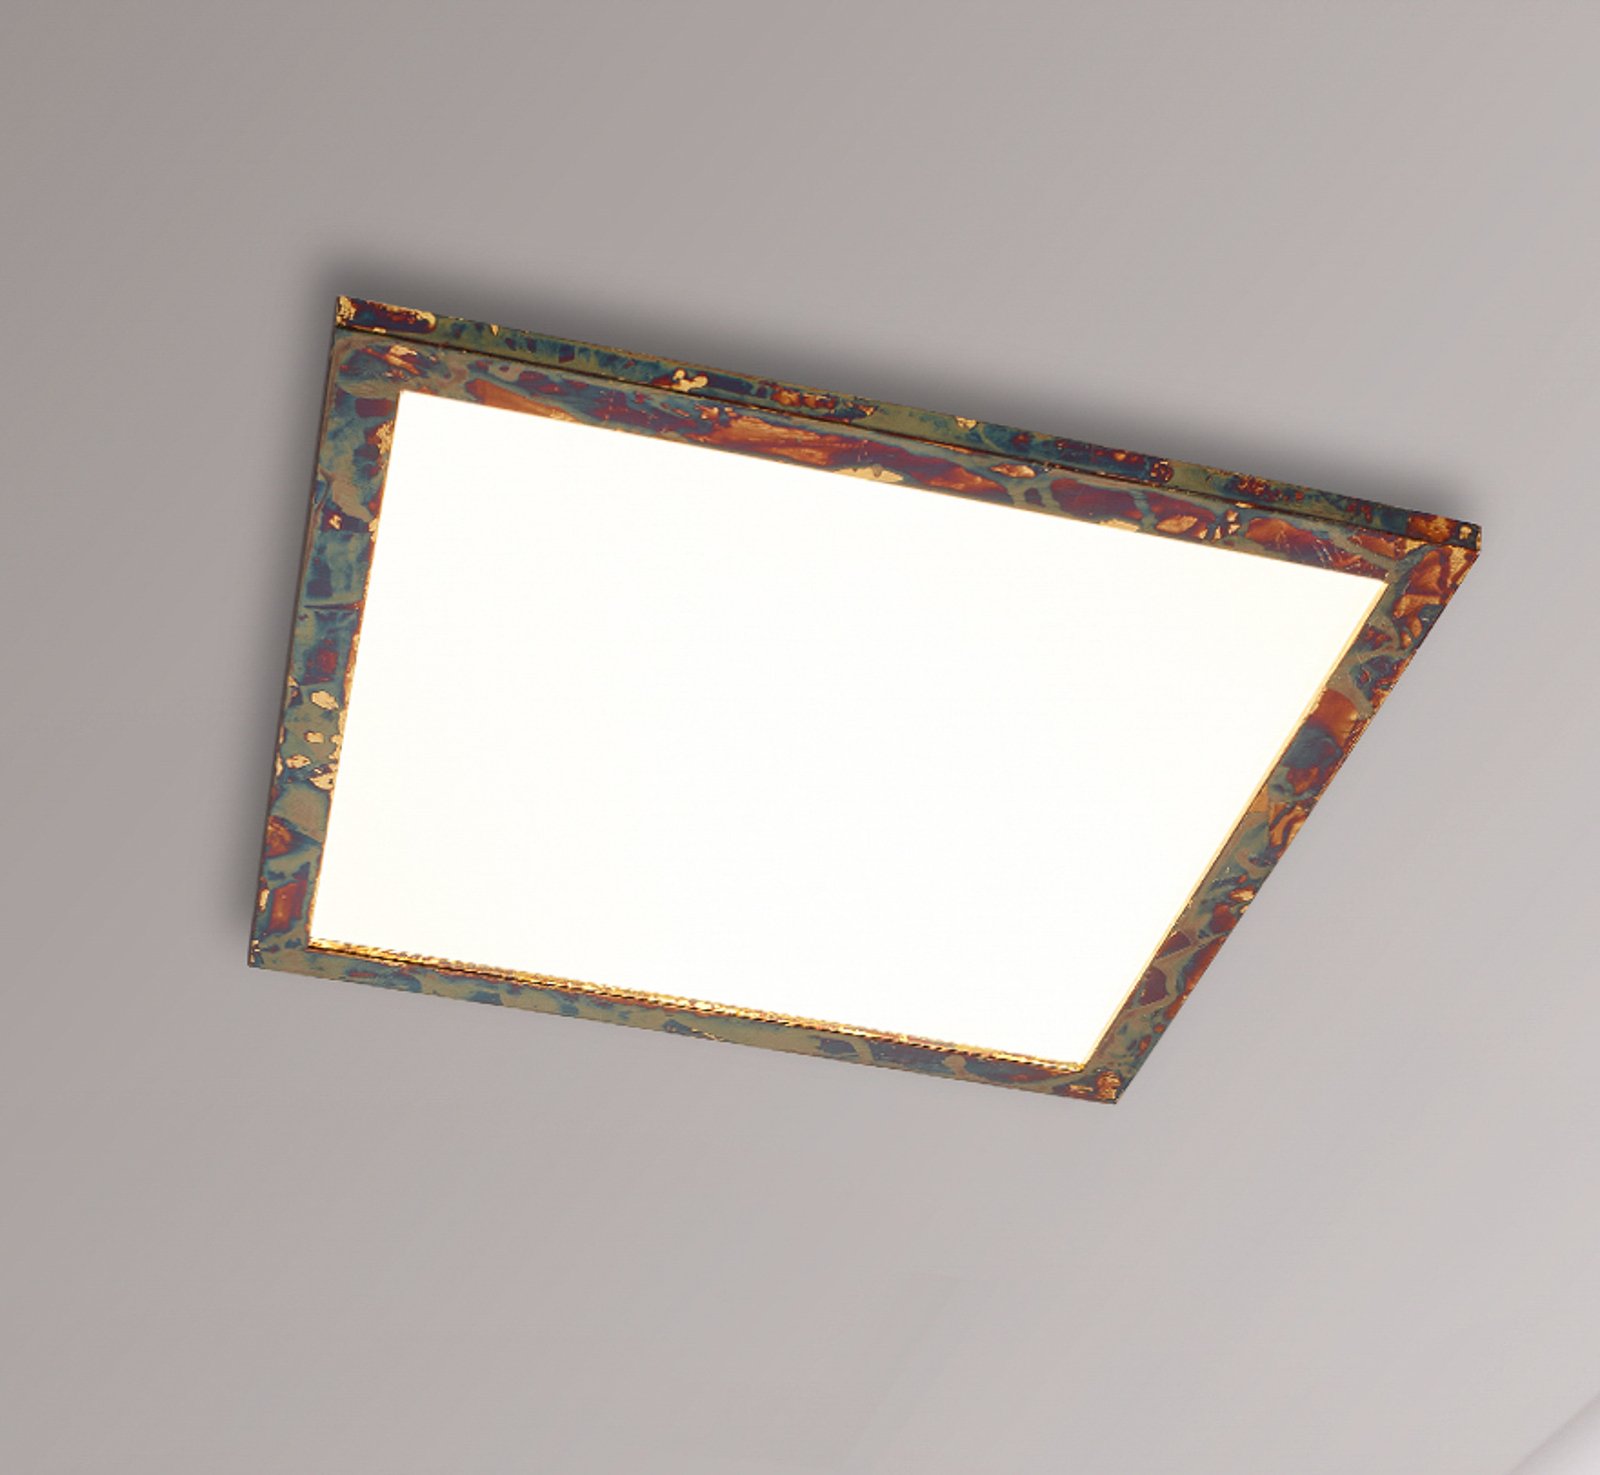 Quitani Aurinor LED paneel, goudkleurig, 68 cm